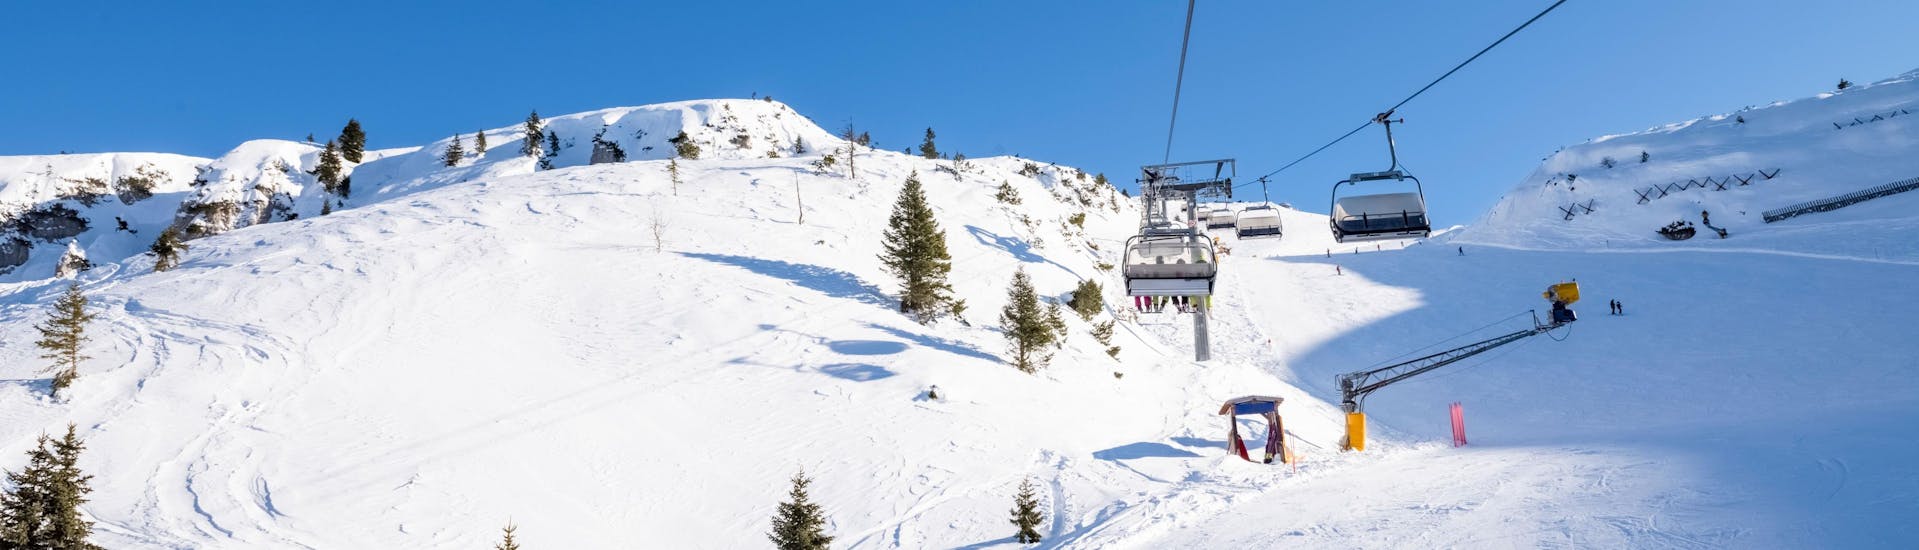 Zonnige dag op de pistes met mensen die naar beneden skiën en met de skilift naar boven gaan.